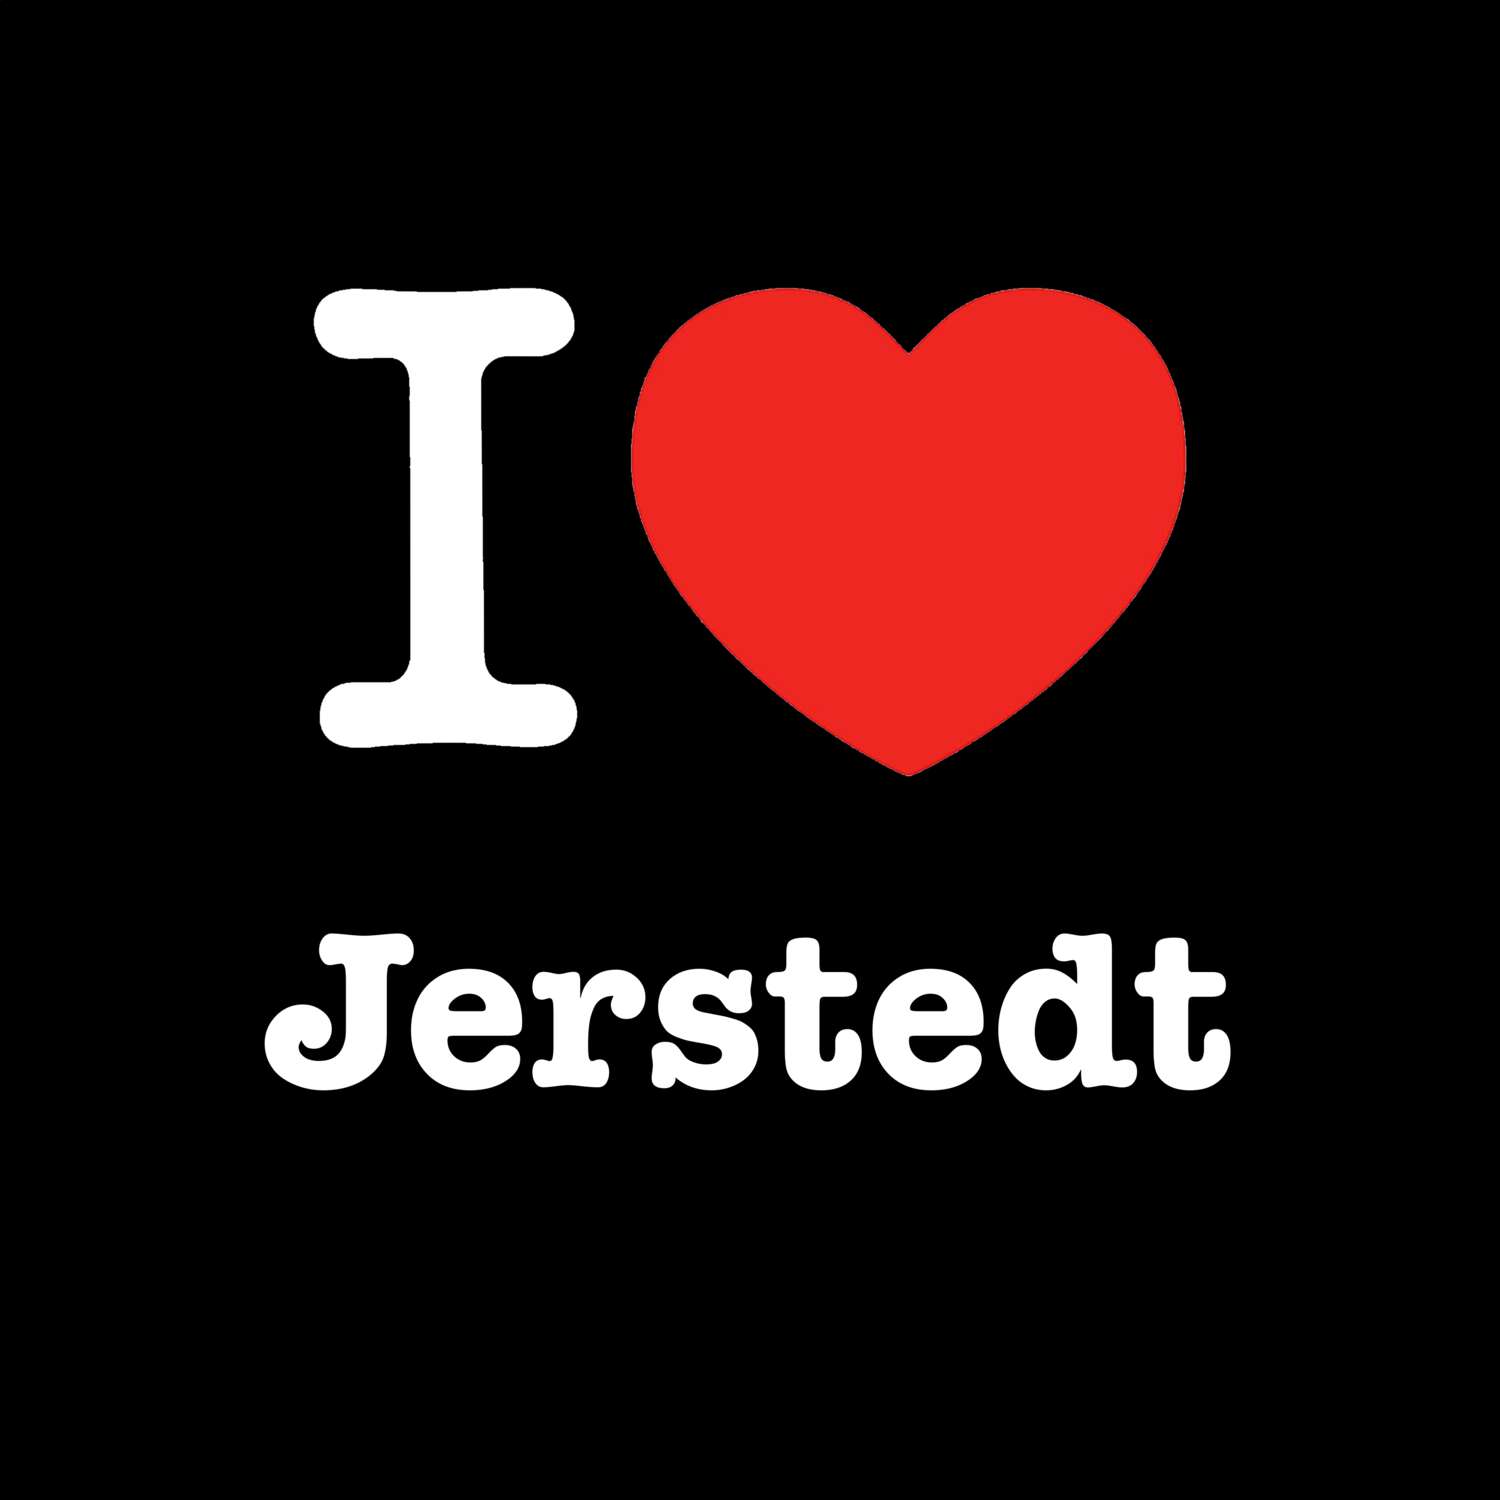 Jerstedt T-Shirt »I love«